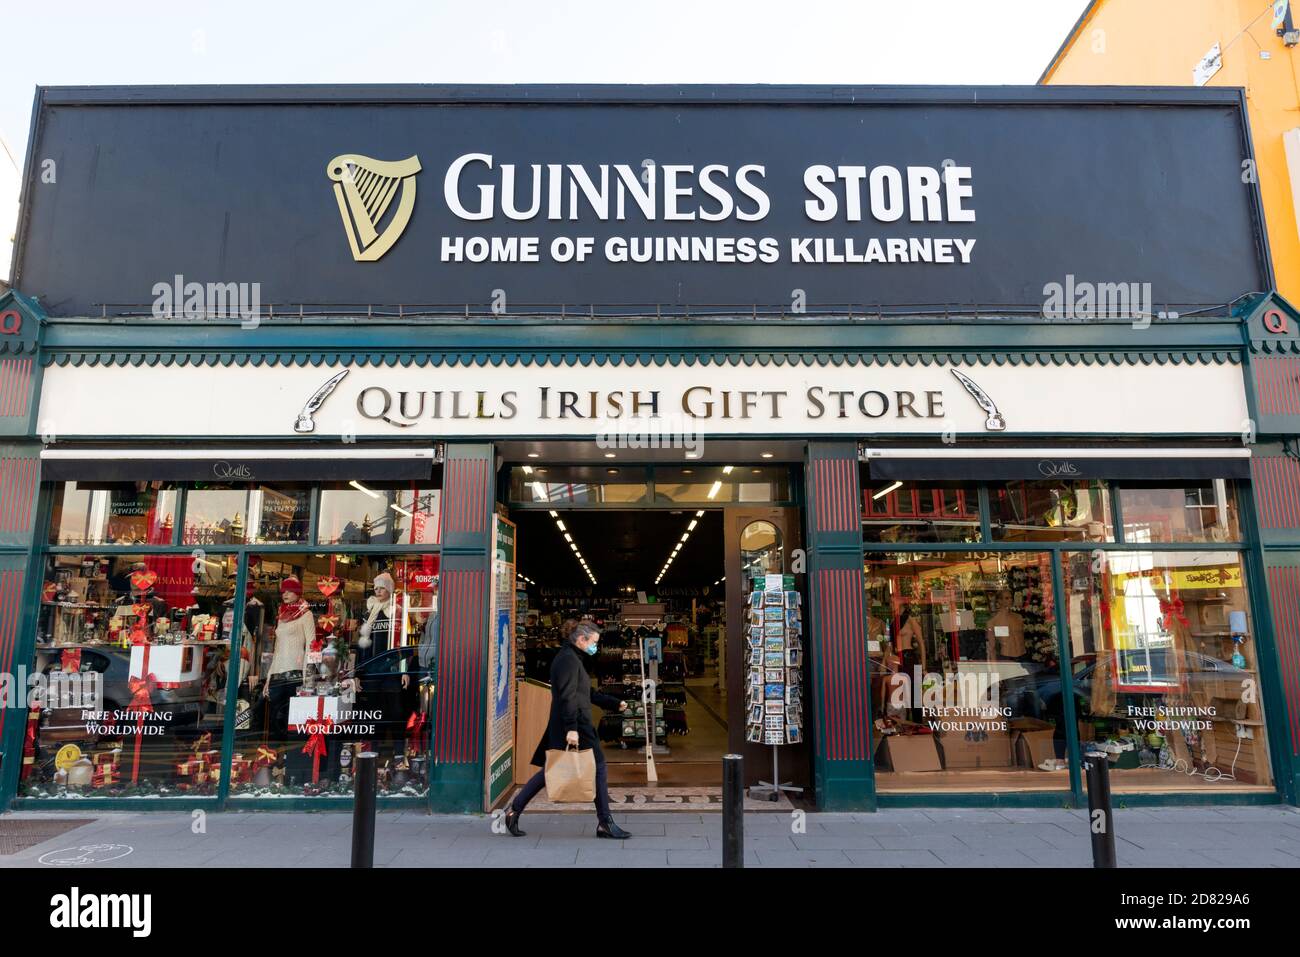 Mann mit Gesichtsmaske vorbei am Guinness Store und Quills Irish Gift Store in High Street Killarney County Kerry Irland Stockfoto